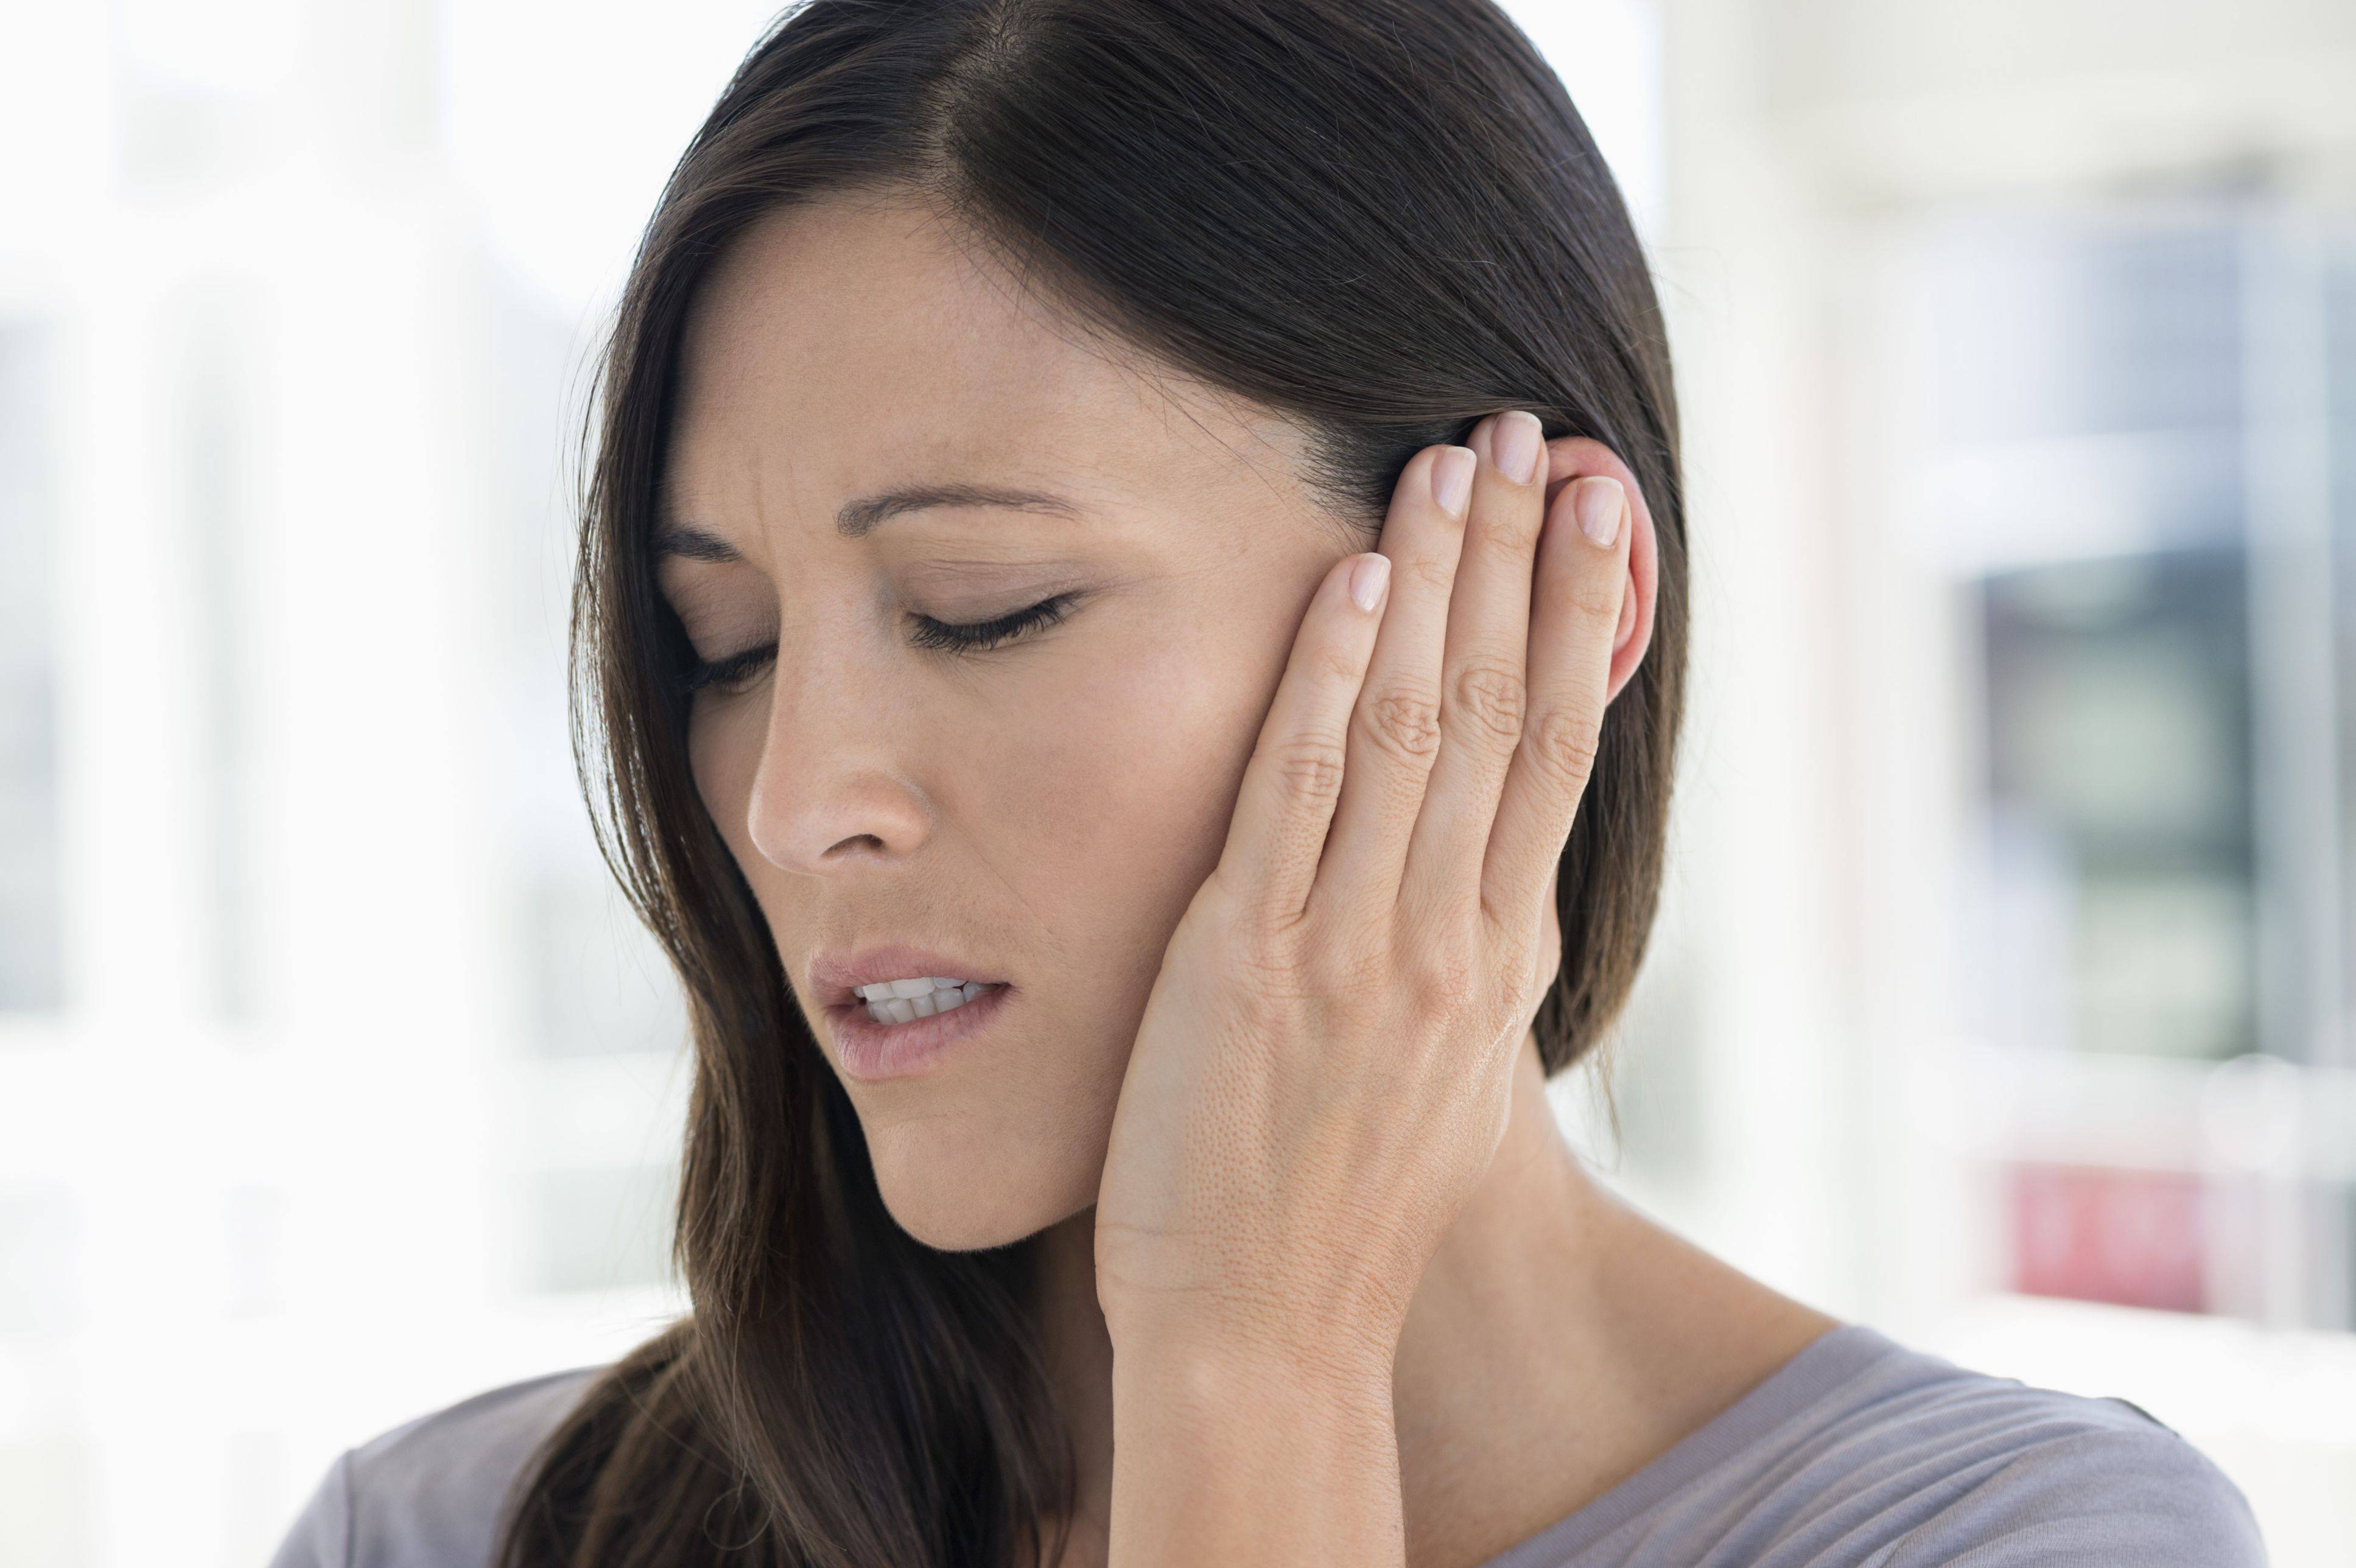 علل بروز گوش درد راه‌های رفع درد گوش راه های مقابله با درد گوش درمان های خانگی درد گوش چگونه گوش درد را درمان کنیم   علل بروز گوش درد راه‌های رفع درد گوش راه های مقابله با درد گوش درمان های خانگی درد گوش چگونه گوش درد را درمان کنیم   